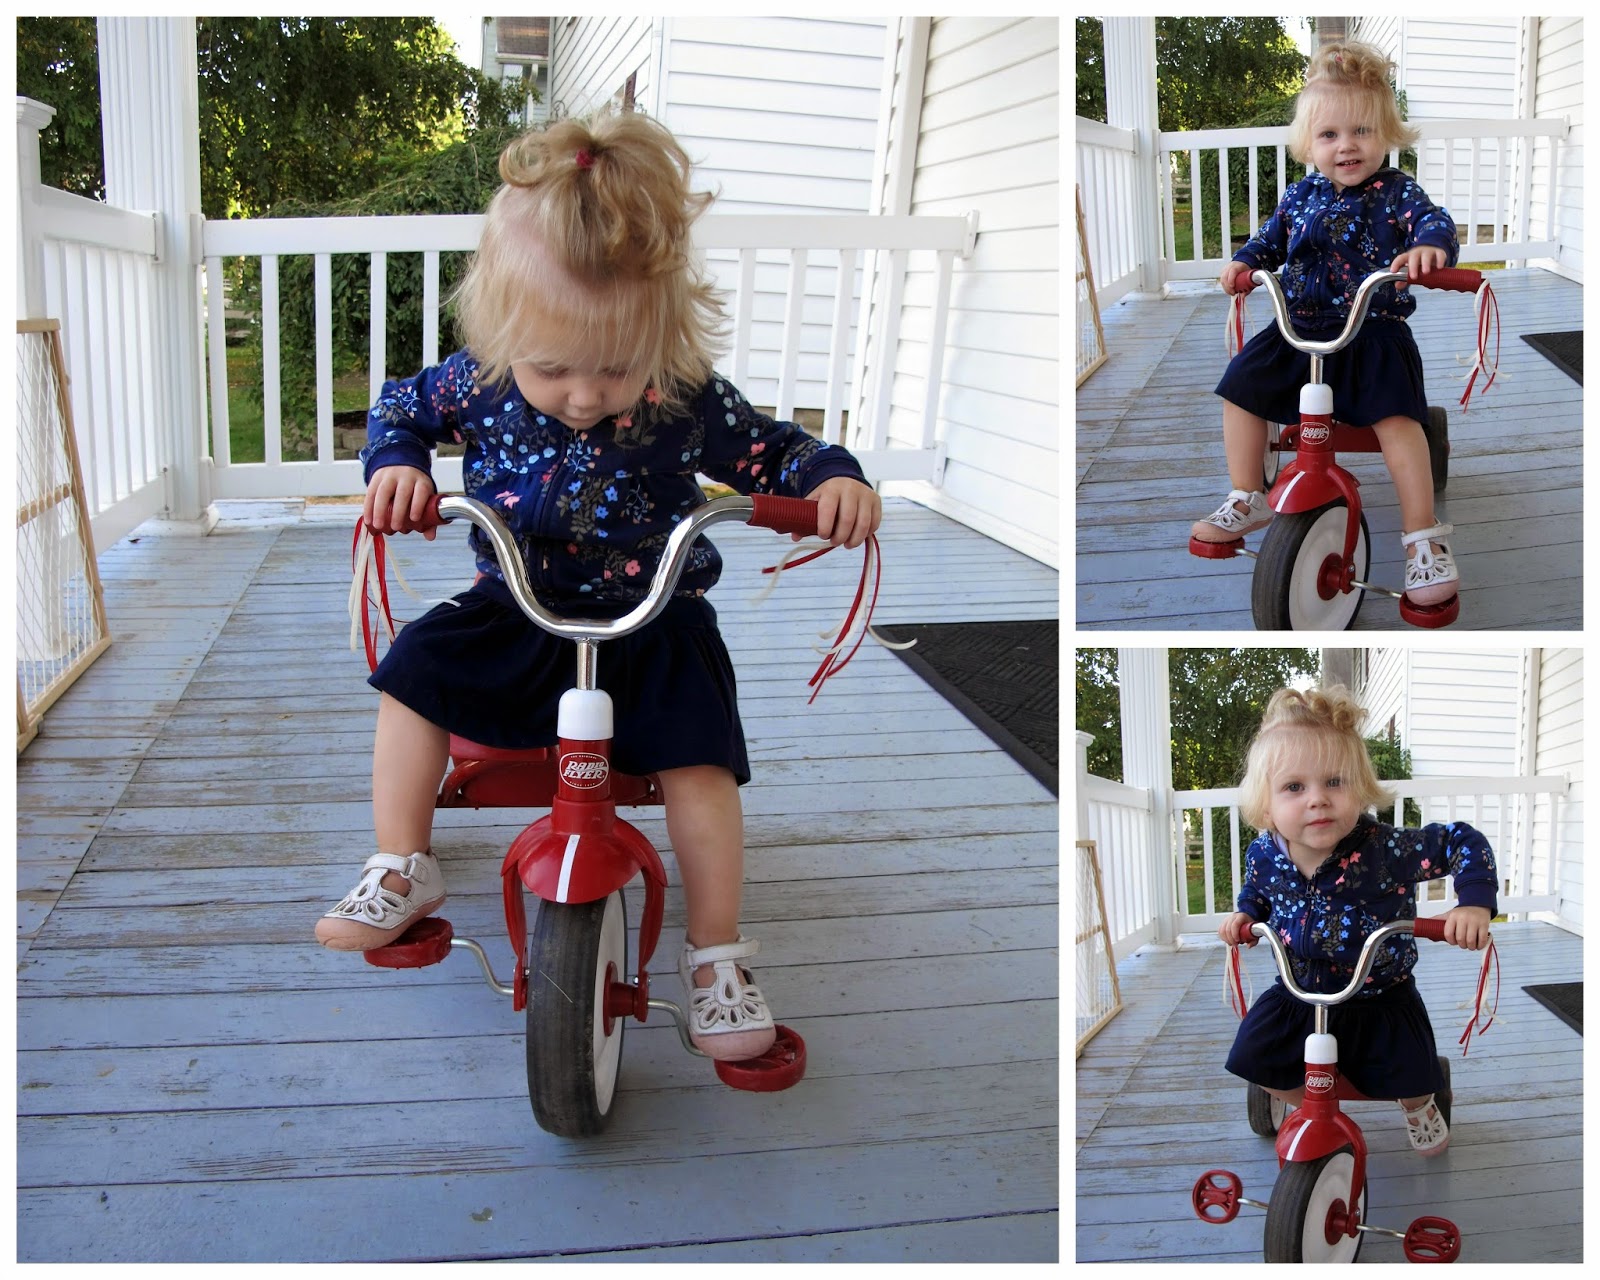 Stella on Her Baby Bike